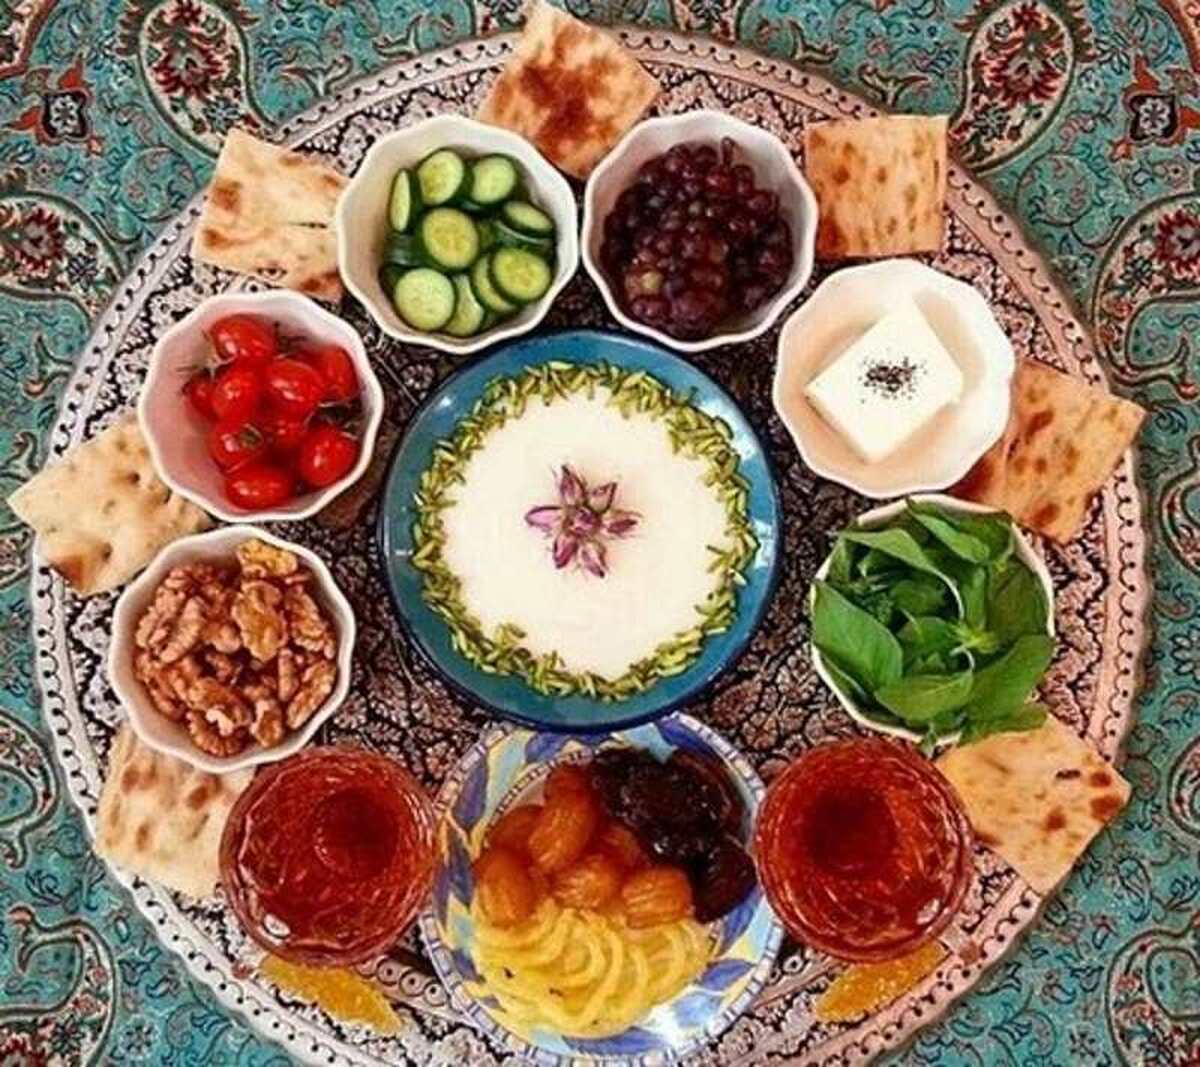 نوروز و افطار فصلی مشترک از میراث جهانی ناملموس سرزمین ایران